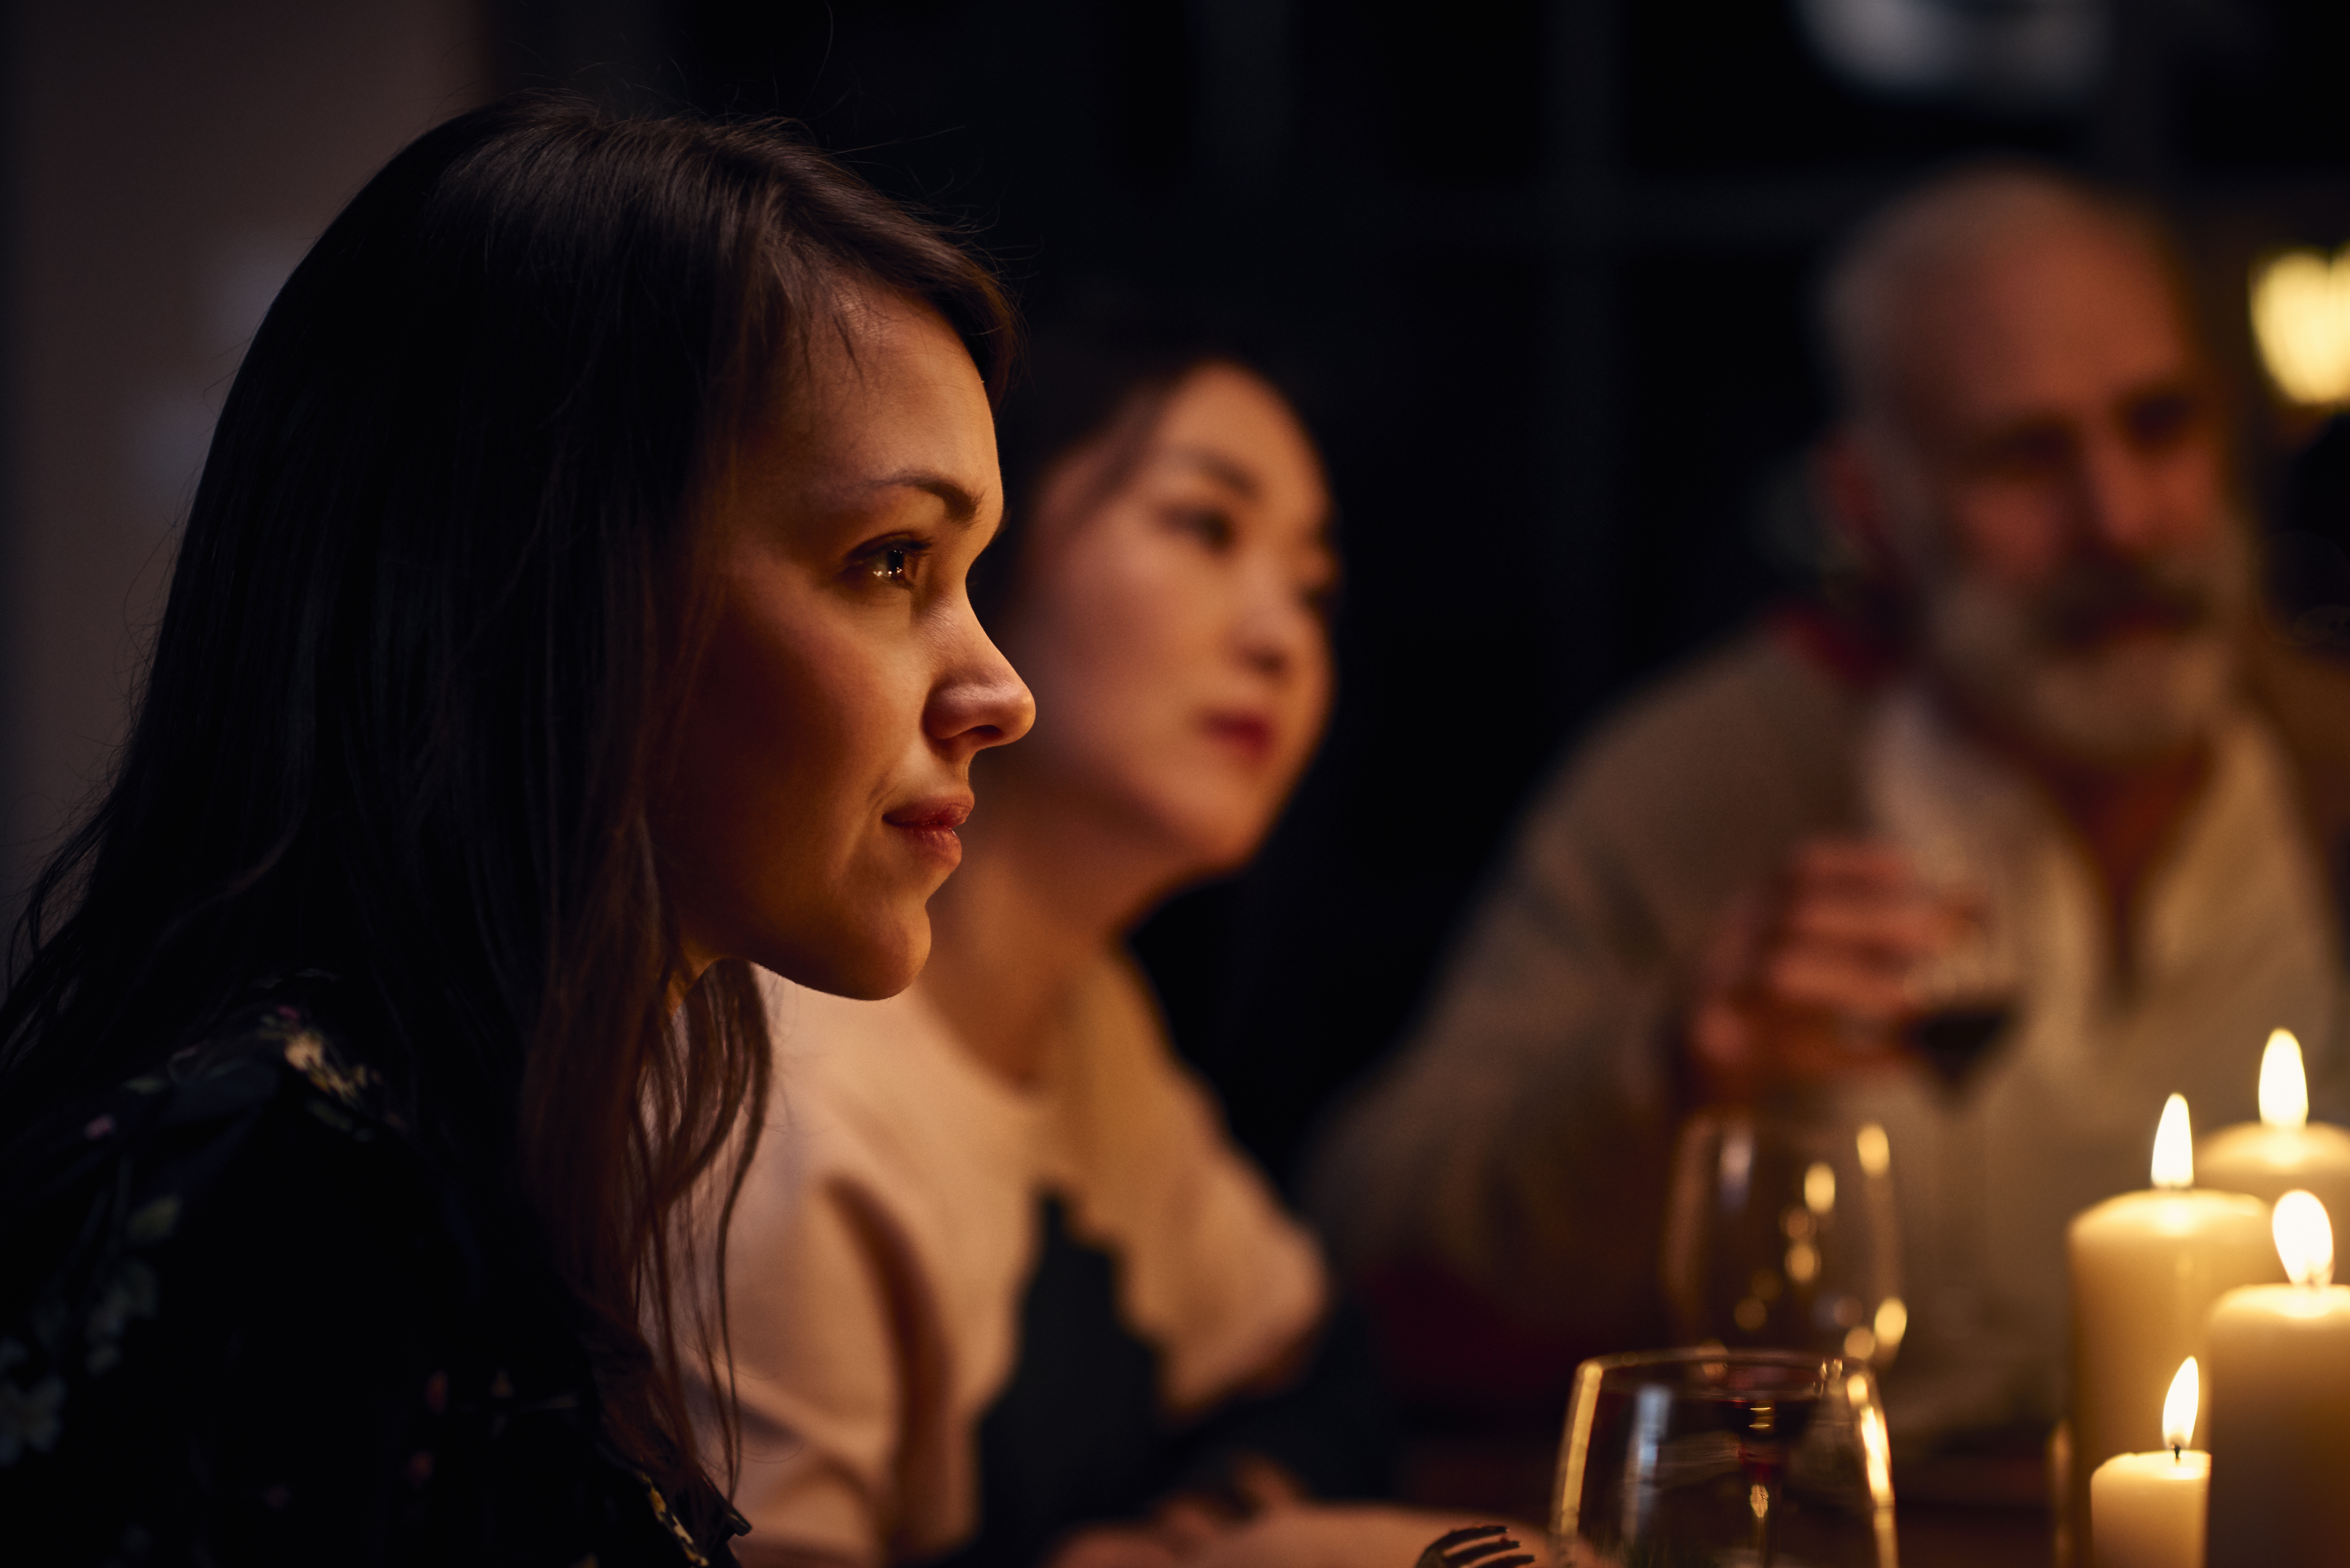 Femme à l'air sereine lors d'un dîner, écoutant attentivement | Source : Getty Images